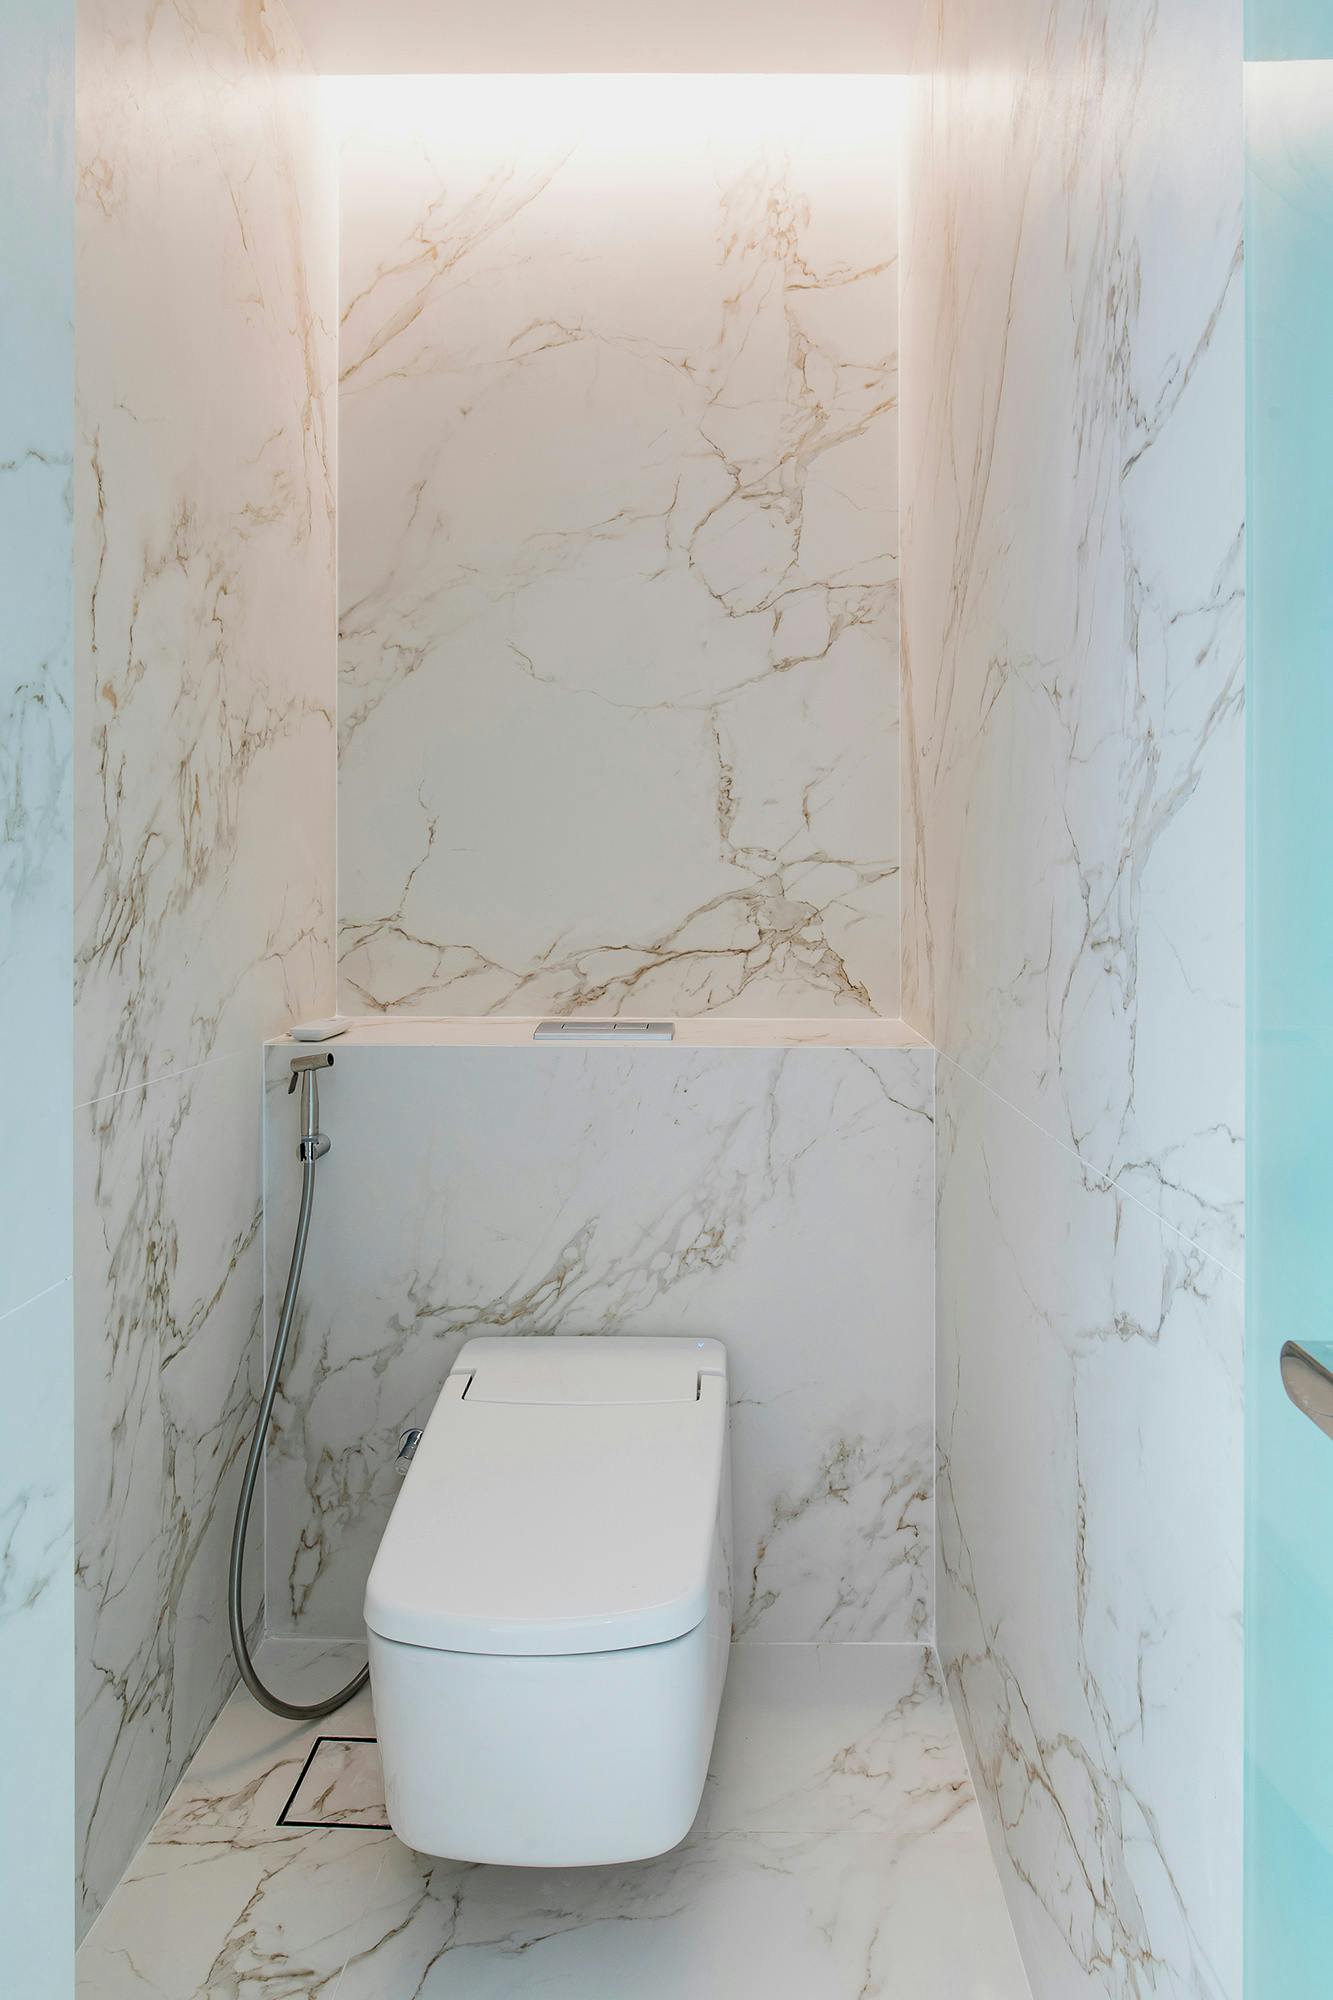 Numero immagine 54 della sezione corrente di DKTN, the material of choice for easy-to-clean, UV and humidity resistant surfaces in a modern villa di Cosentino Italia